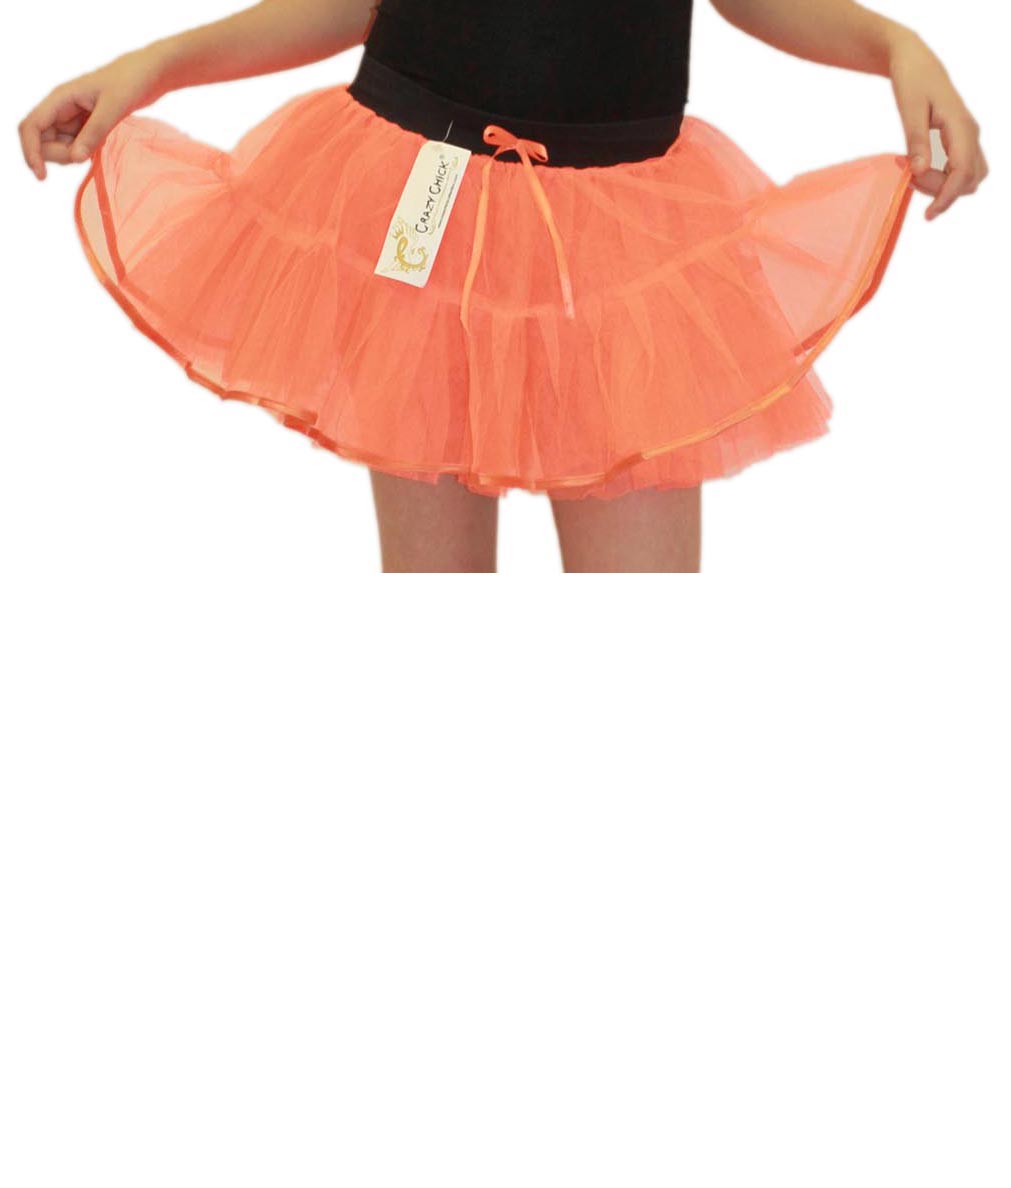 Crazy Chick Girls 4 Layers Orange Tutu Skirt